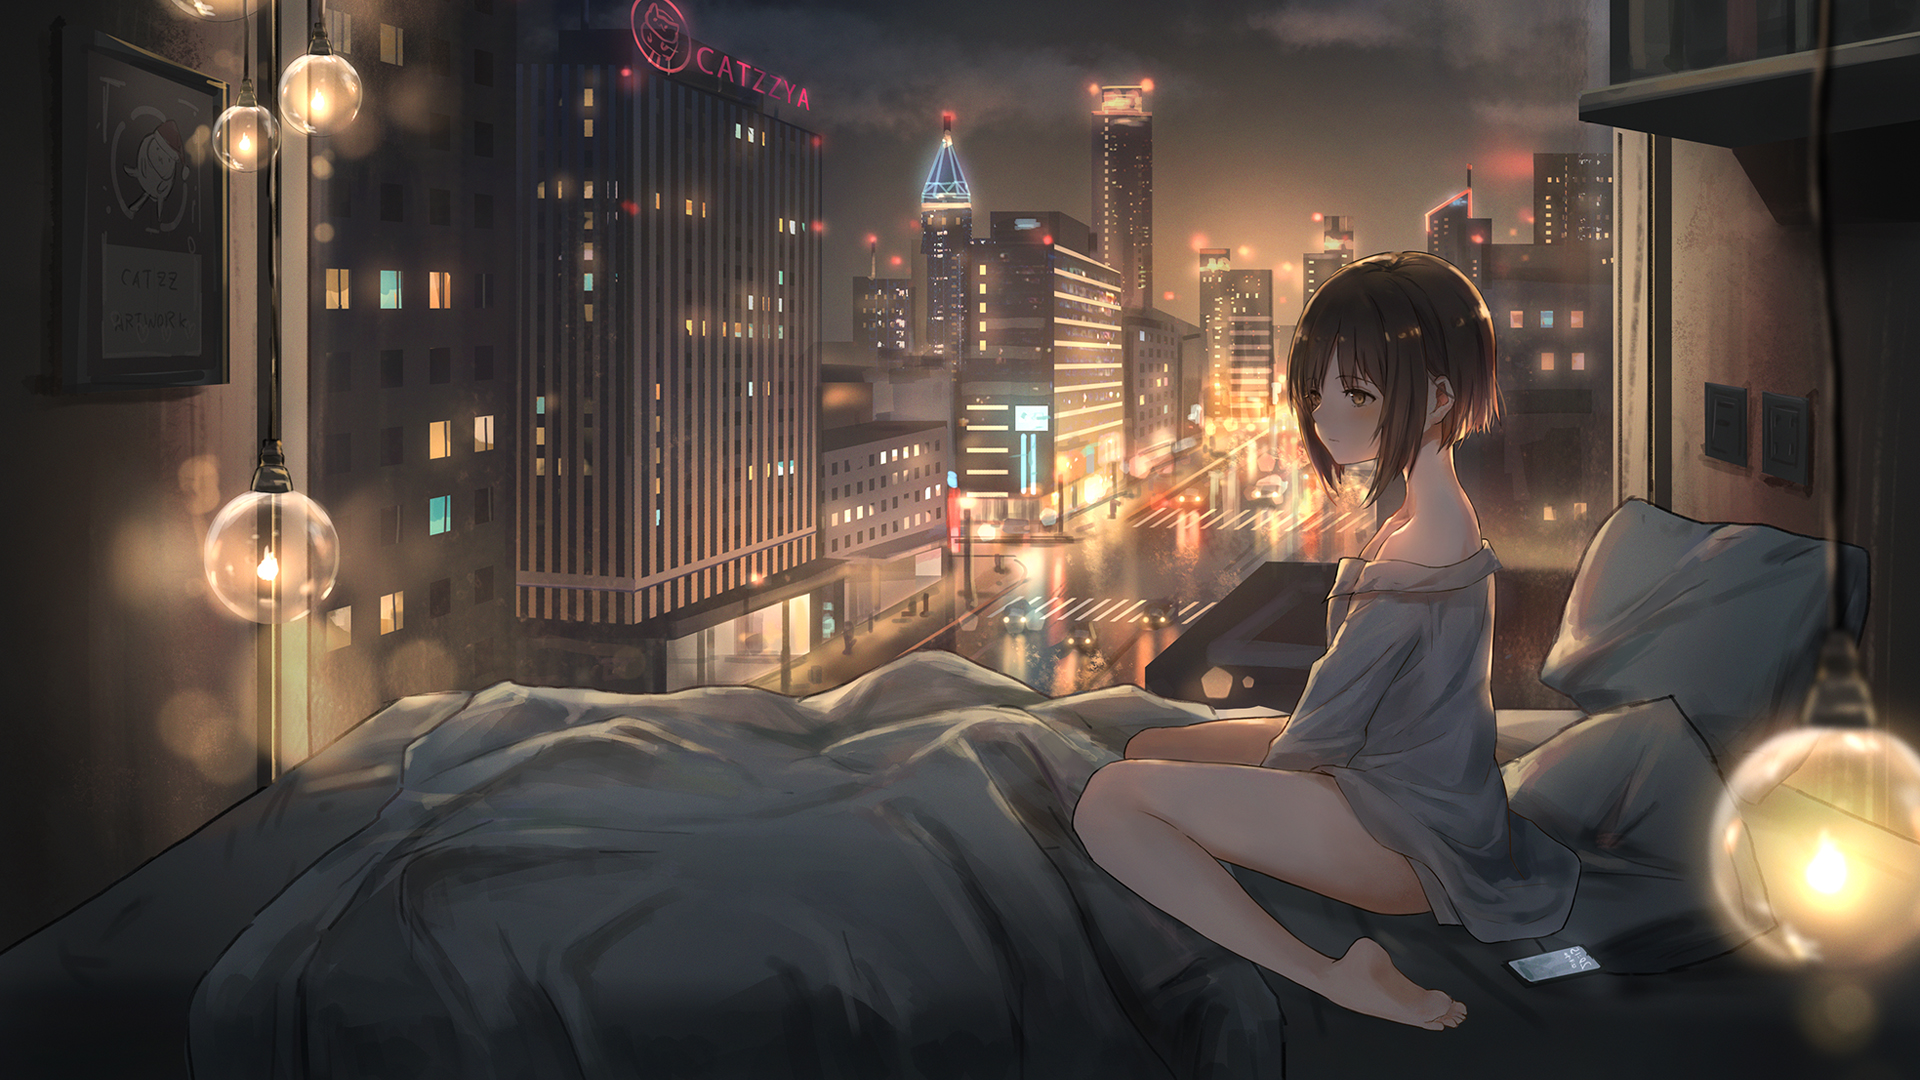 女孩子 起床 晚上 都市 风景夜景 二次元动漫壁纸